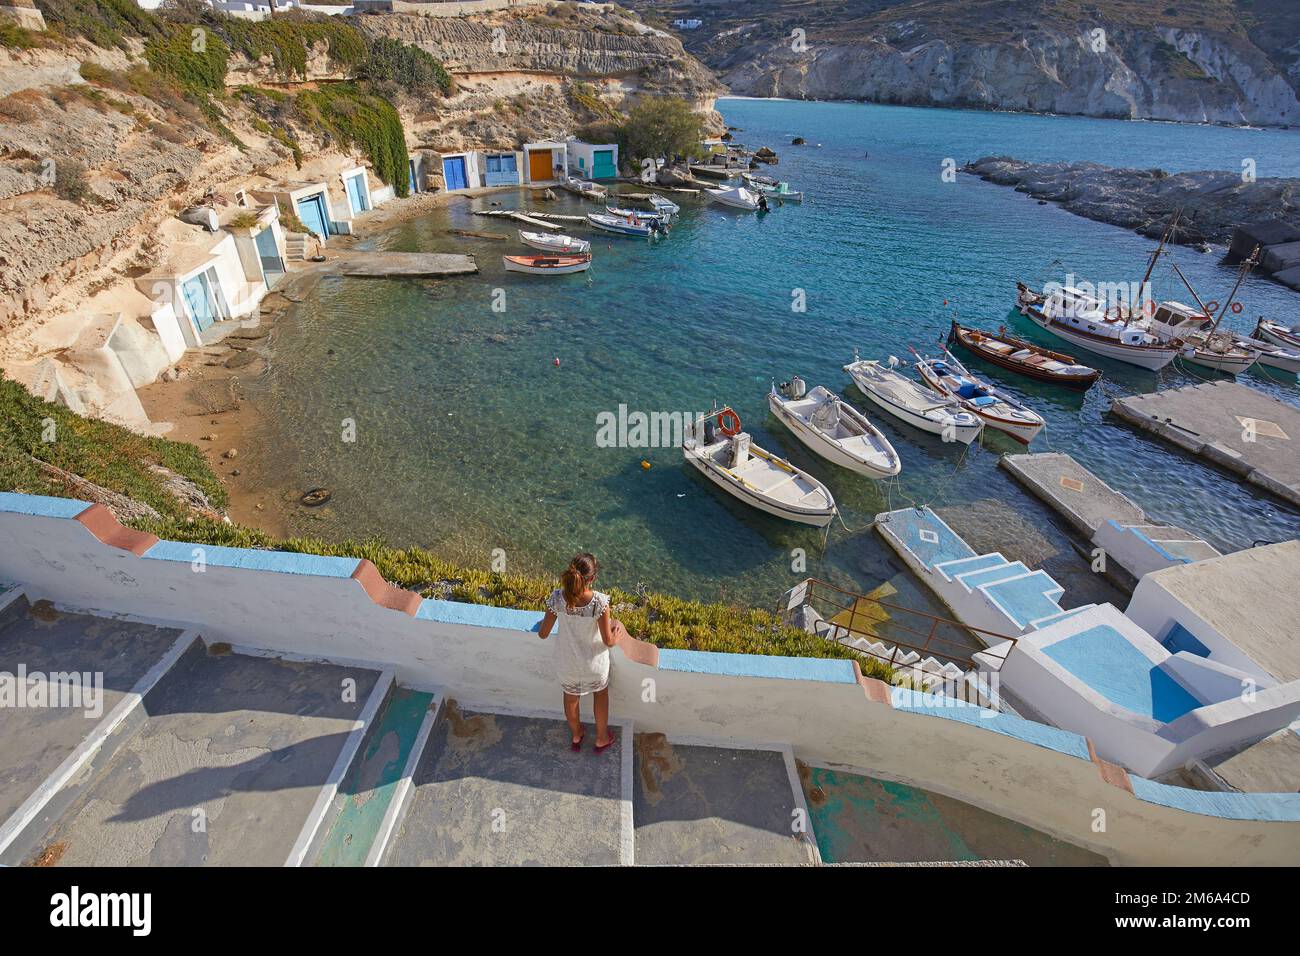 Le pittoresque village de pêcheurs de Mandrakia, Milos, Grèce Banque D'Images